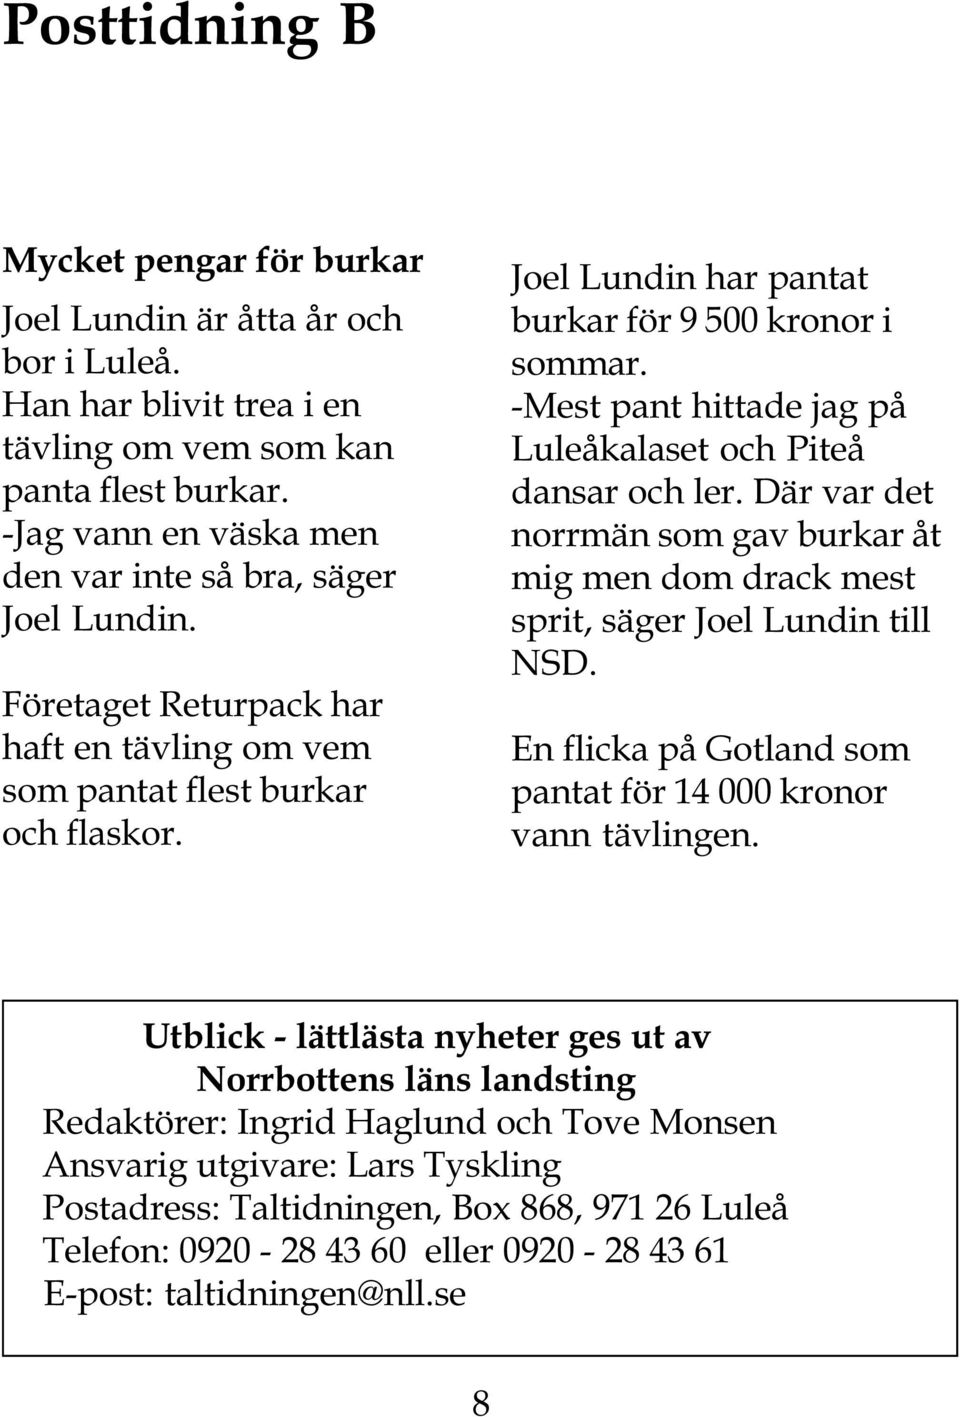 Joel Lundin har pantat burkar för 9 500 kronor i sommar. -Mest pant hittade jag på Luleåkalaset och Piteå dansar och ler.